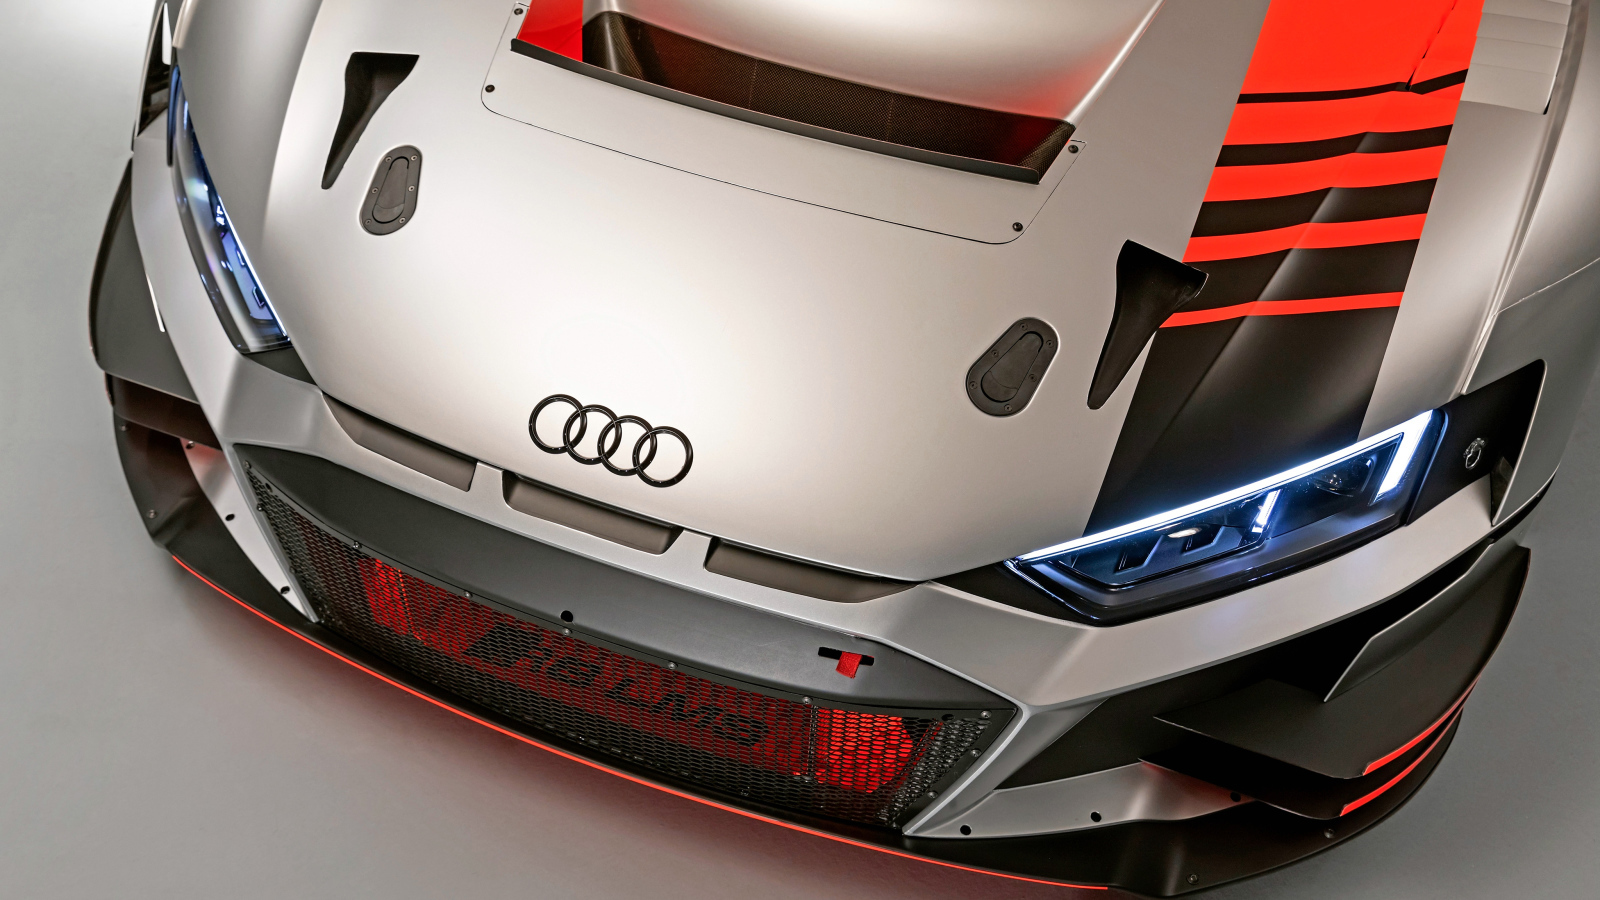 Включенные фары автомобиля Audi R8 LMS 2019 года